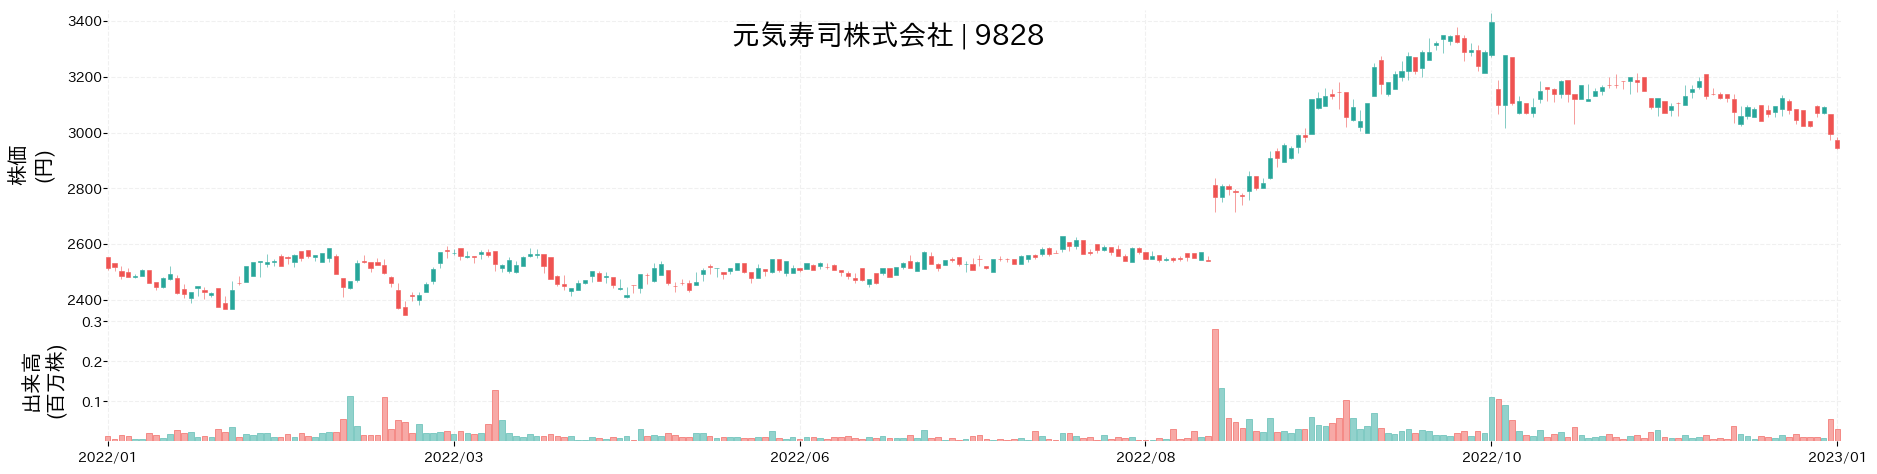 元気寿司の株価推移(2022)